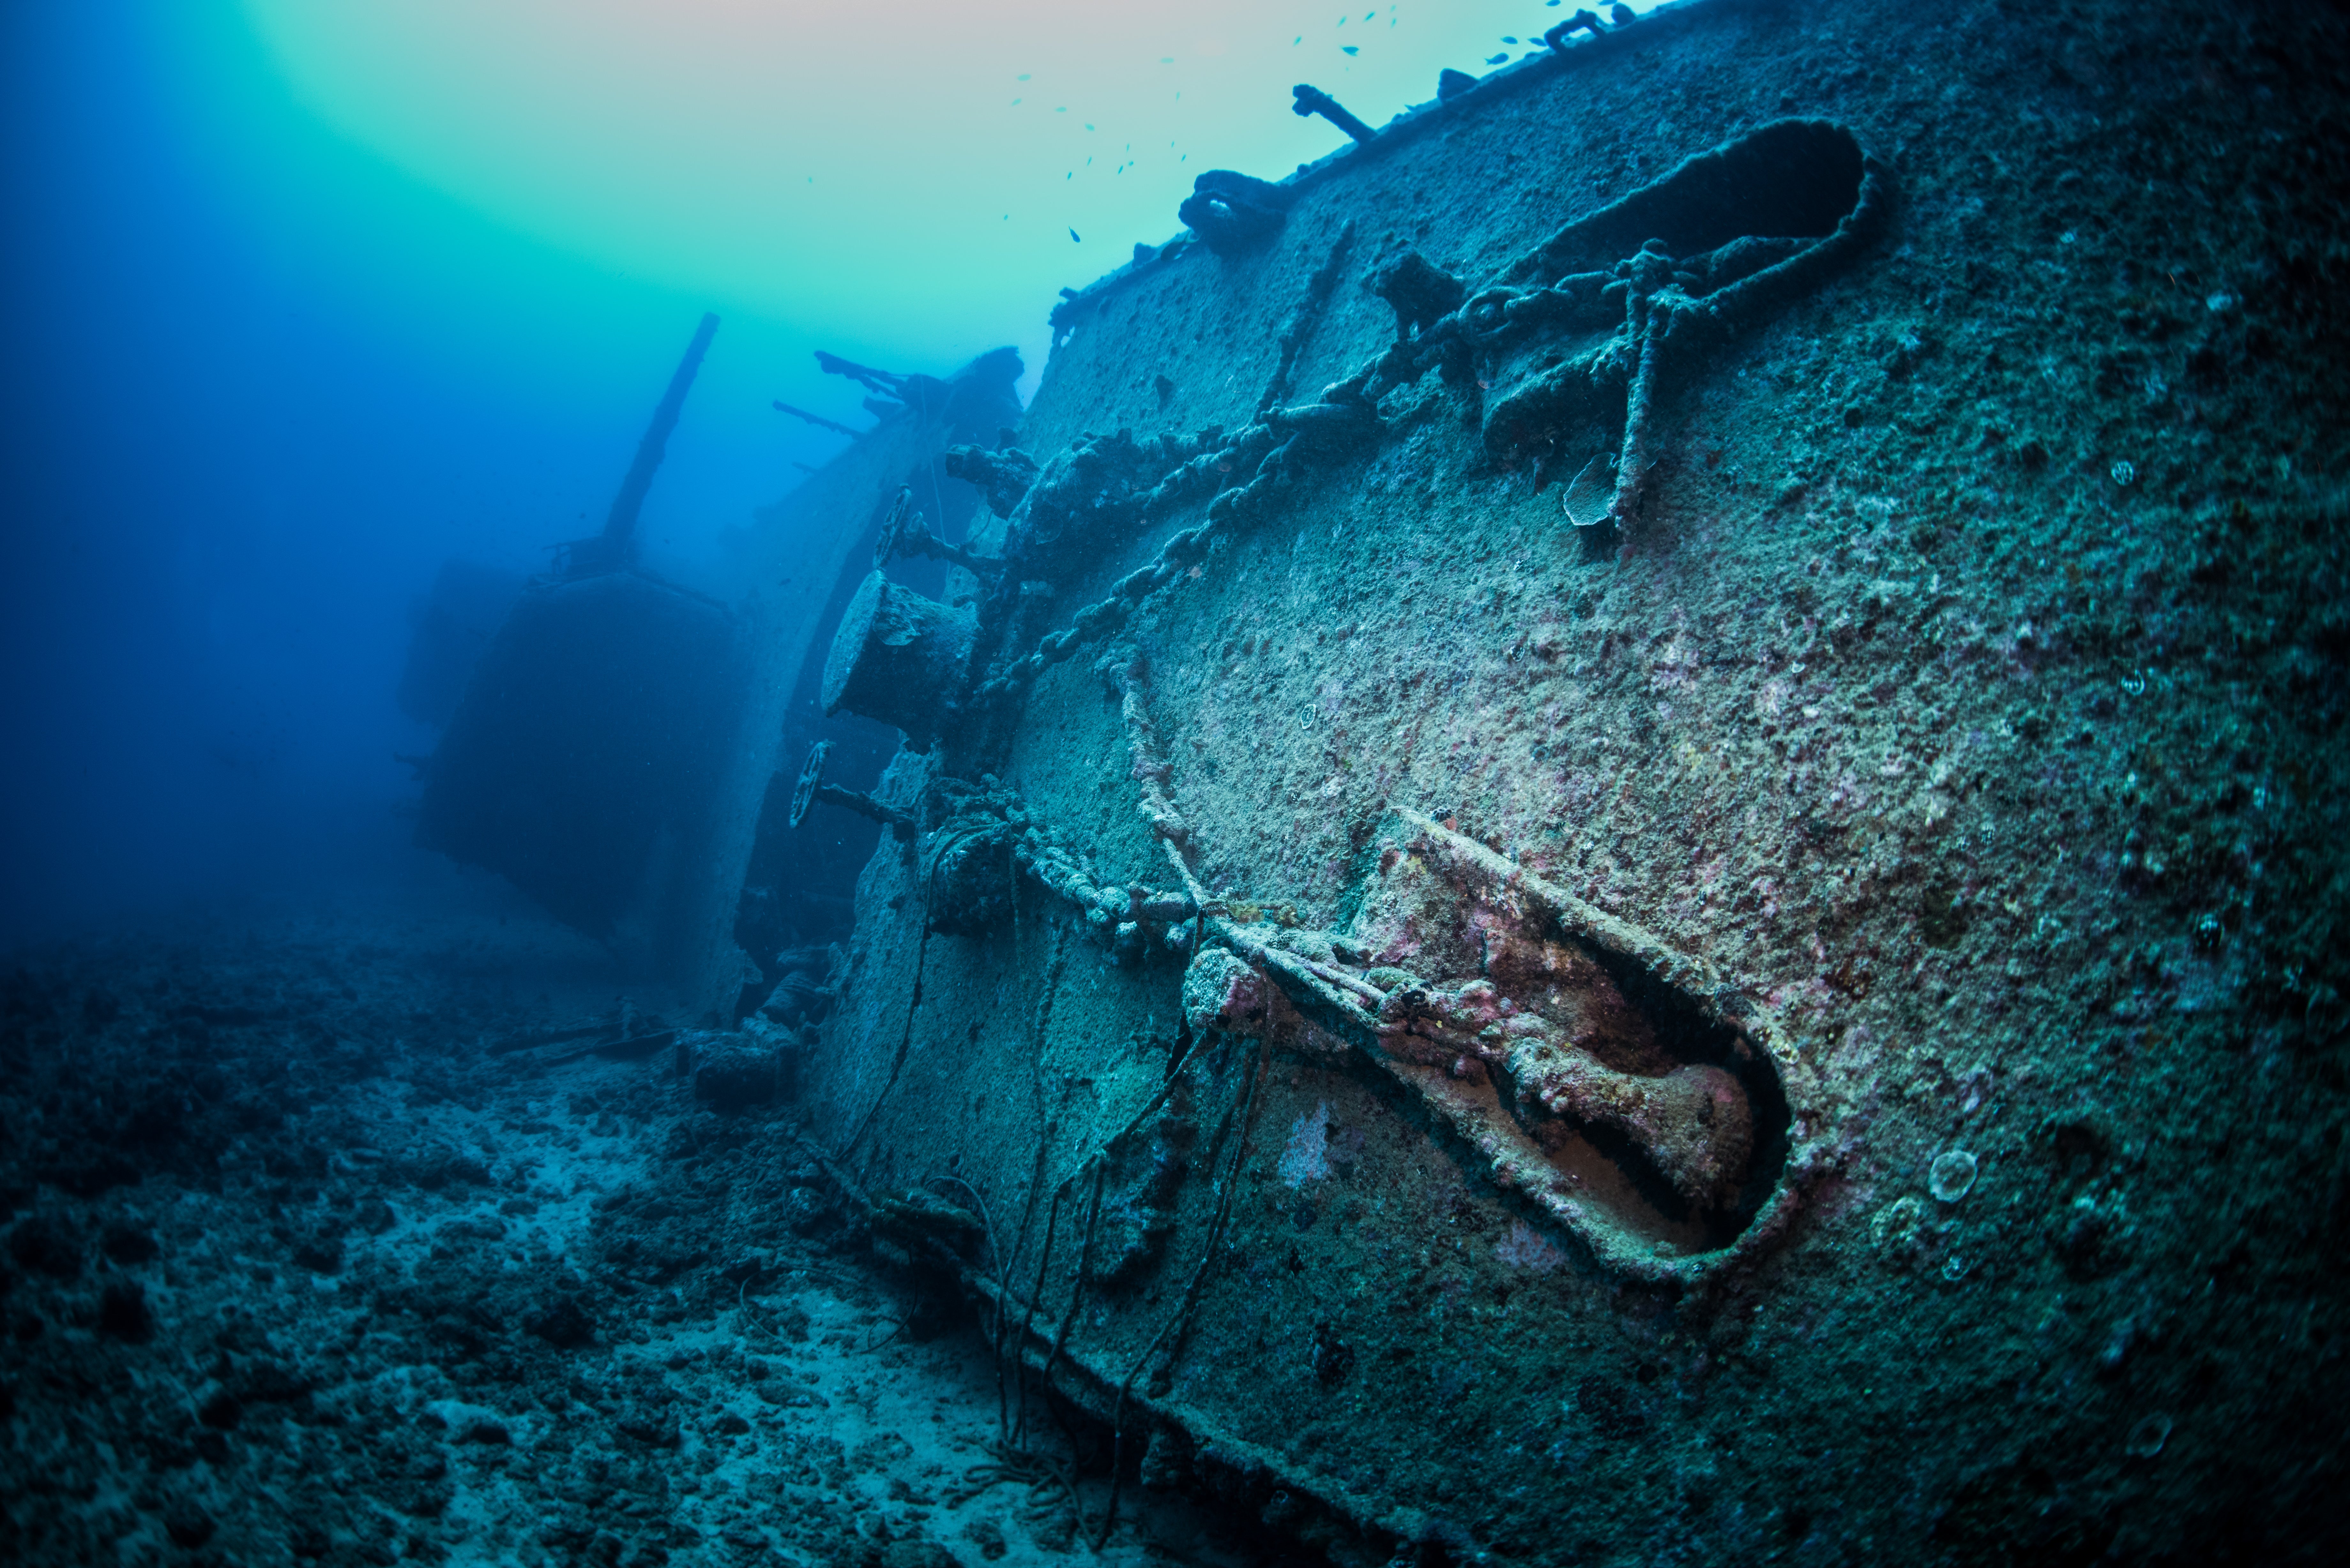 「第二次世界大戦で沈んだ軍艦「USSエモンズ」」の写真